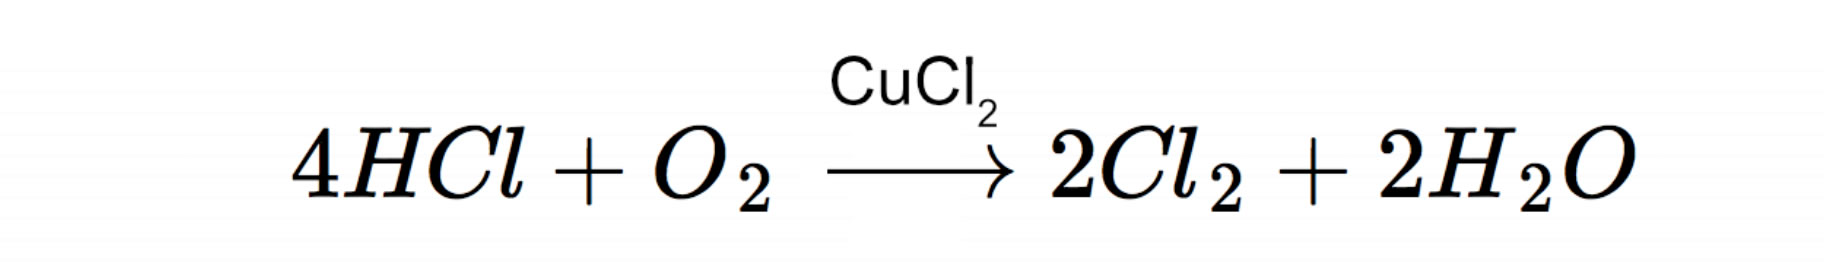 Deacon-Verfahren, 4 HCl + O2 --> 2 Cl2 + 2 H2O mit CuCl2 als Katalysator